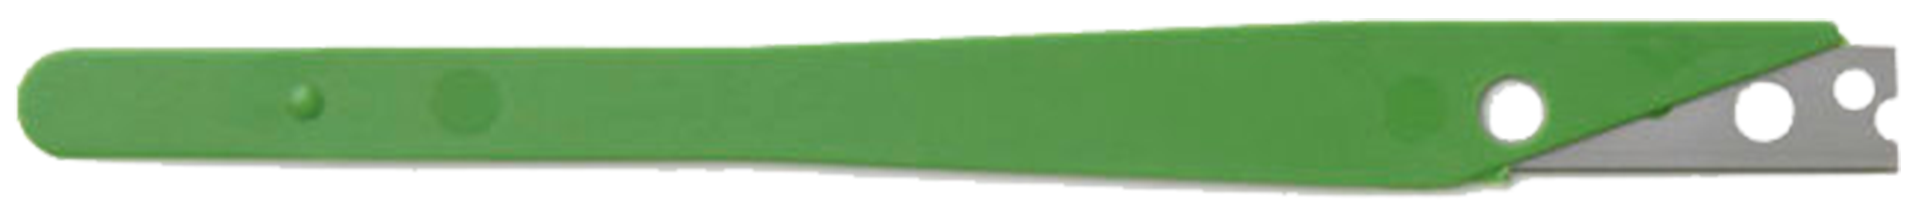 baker blade handle in green